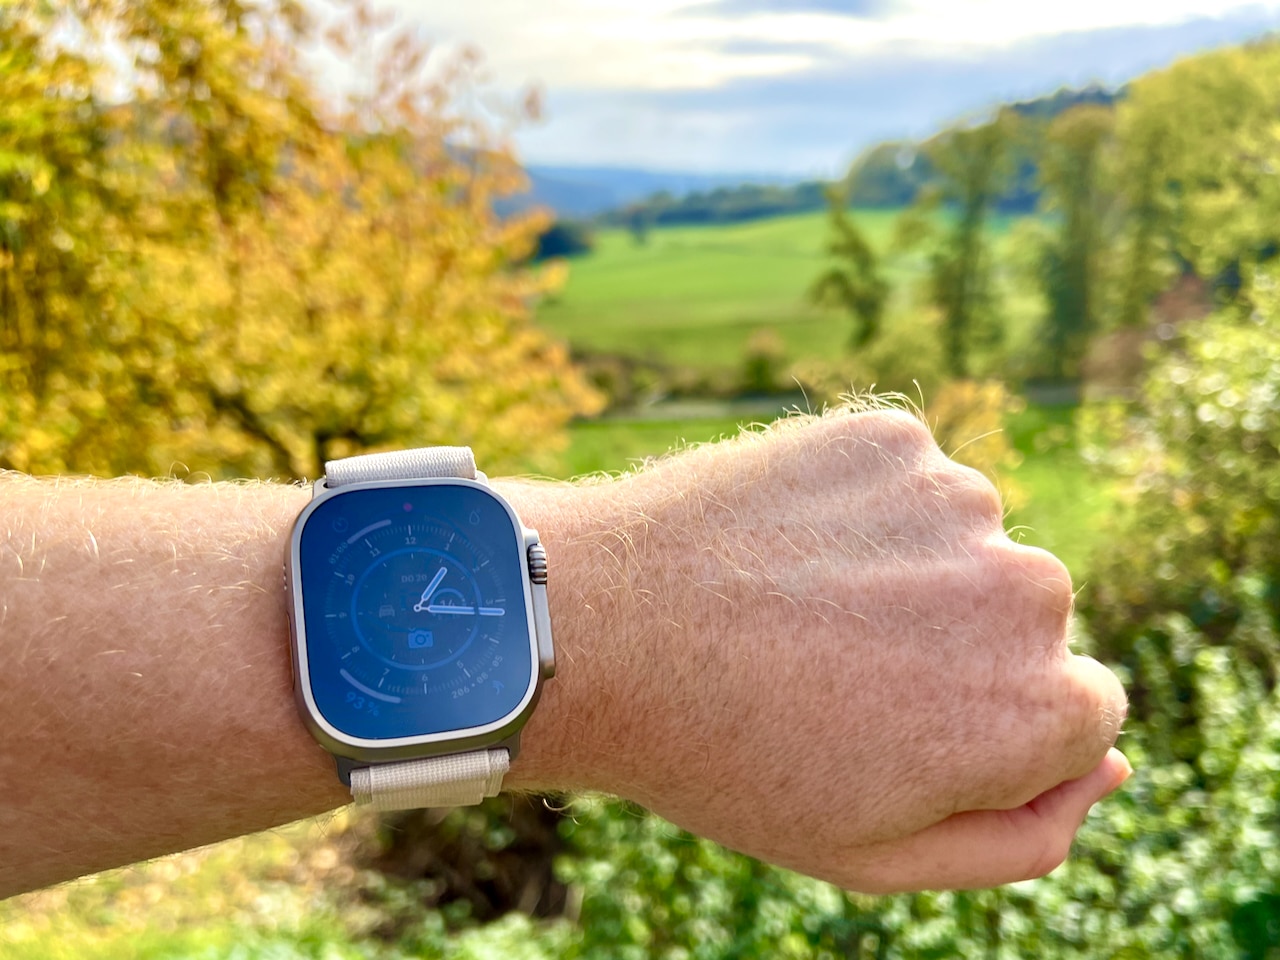 Apple Watch Ultratest og oplevelser - udendørs smartwatch til ethvert eventyr?